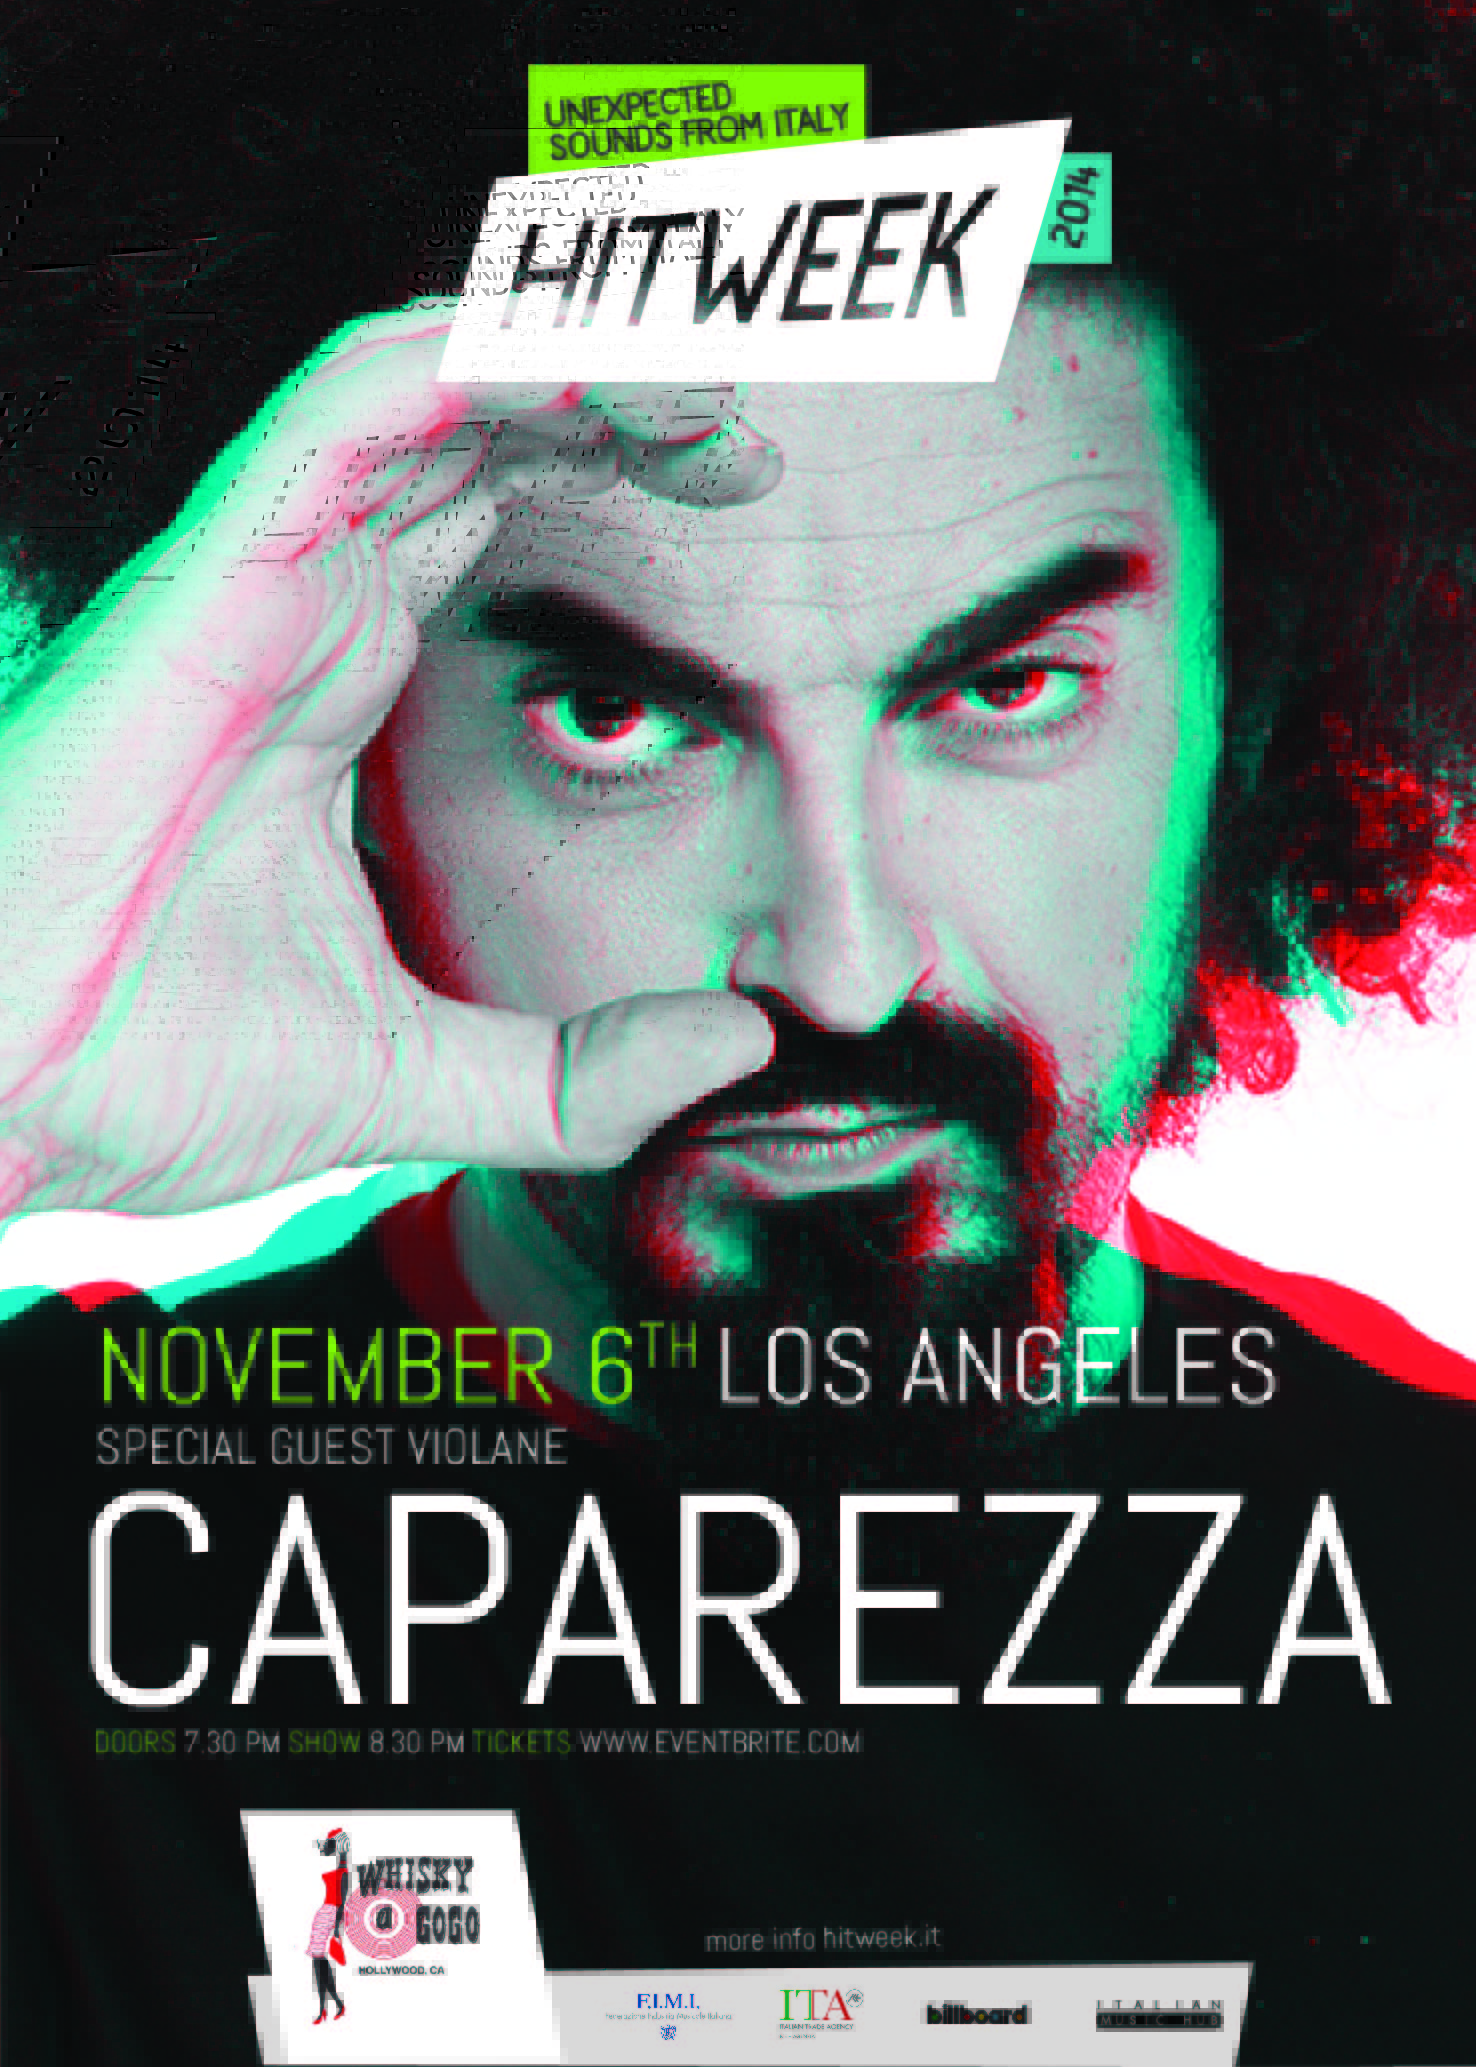 Hit Week 2014 Los Angeles